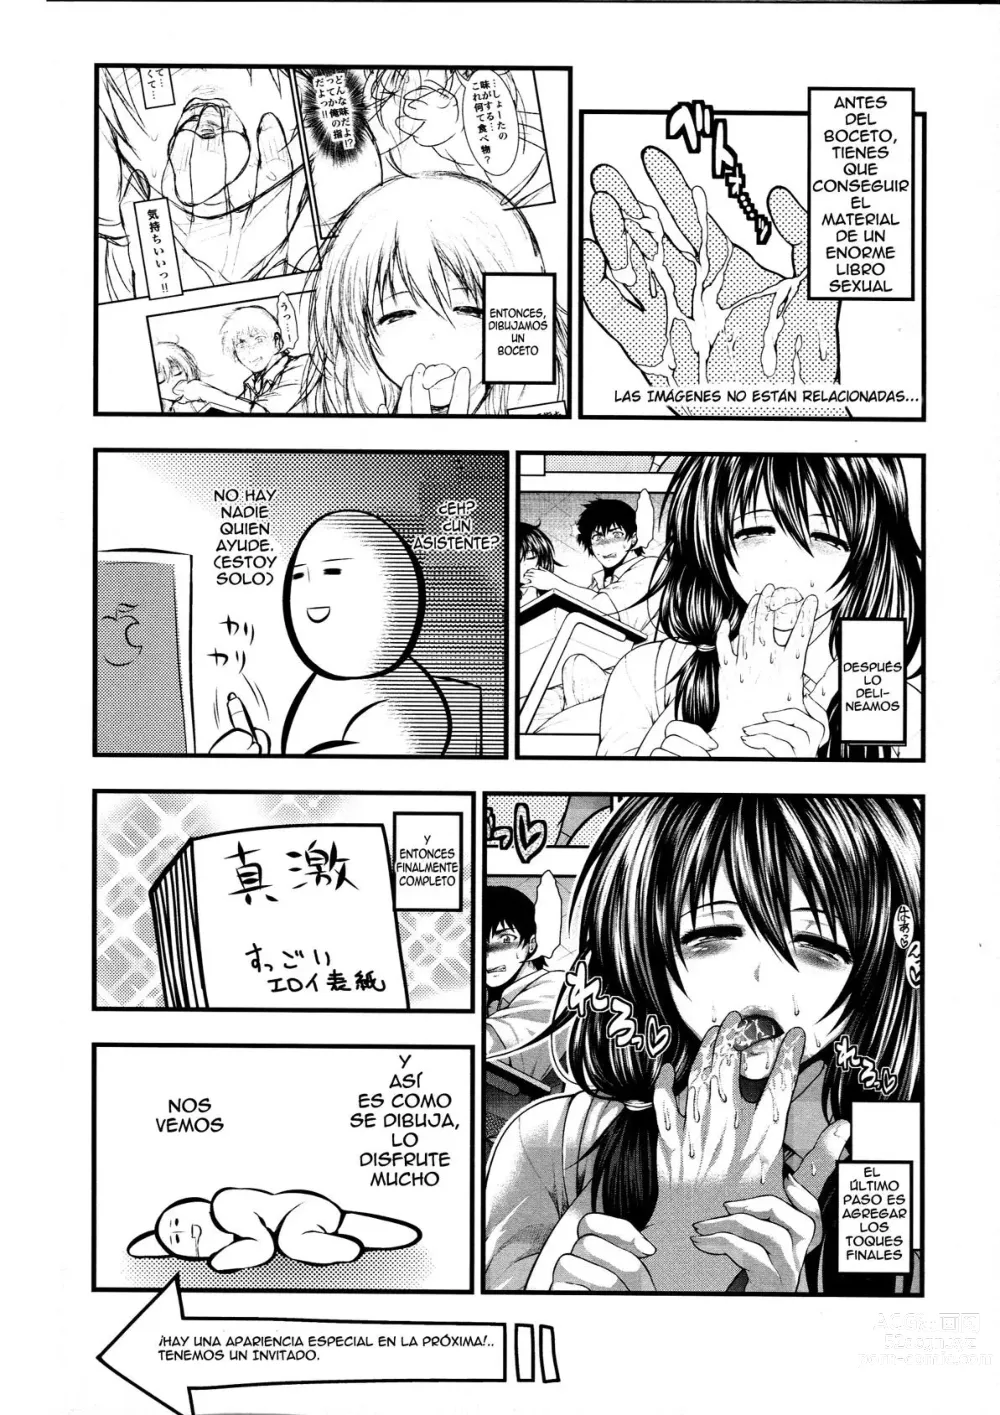 Page 228 of manga Pai Fella Lady